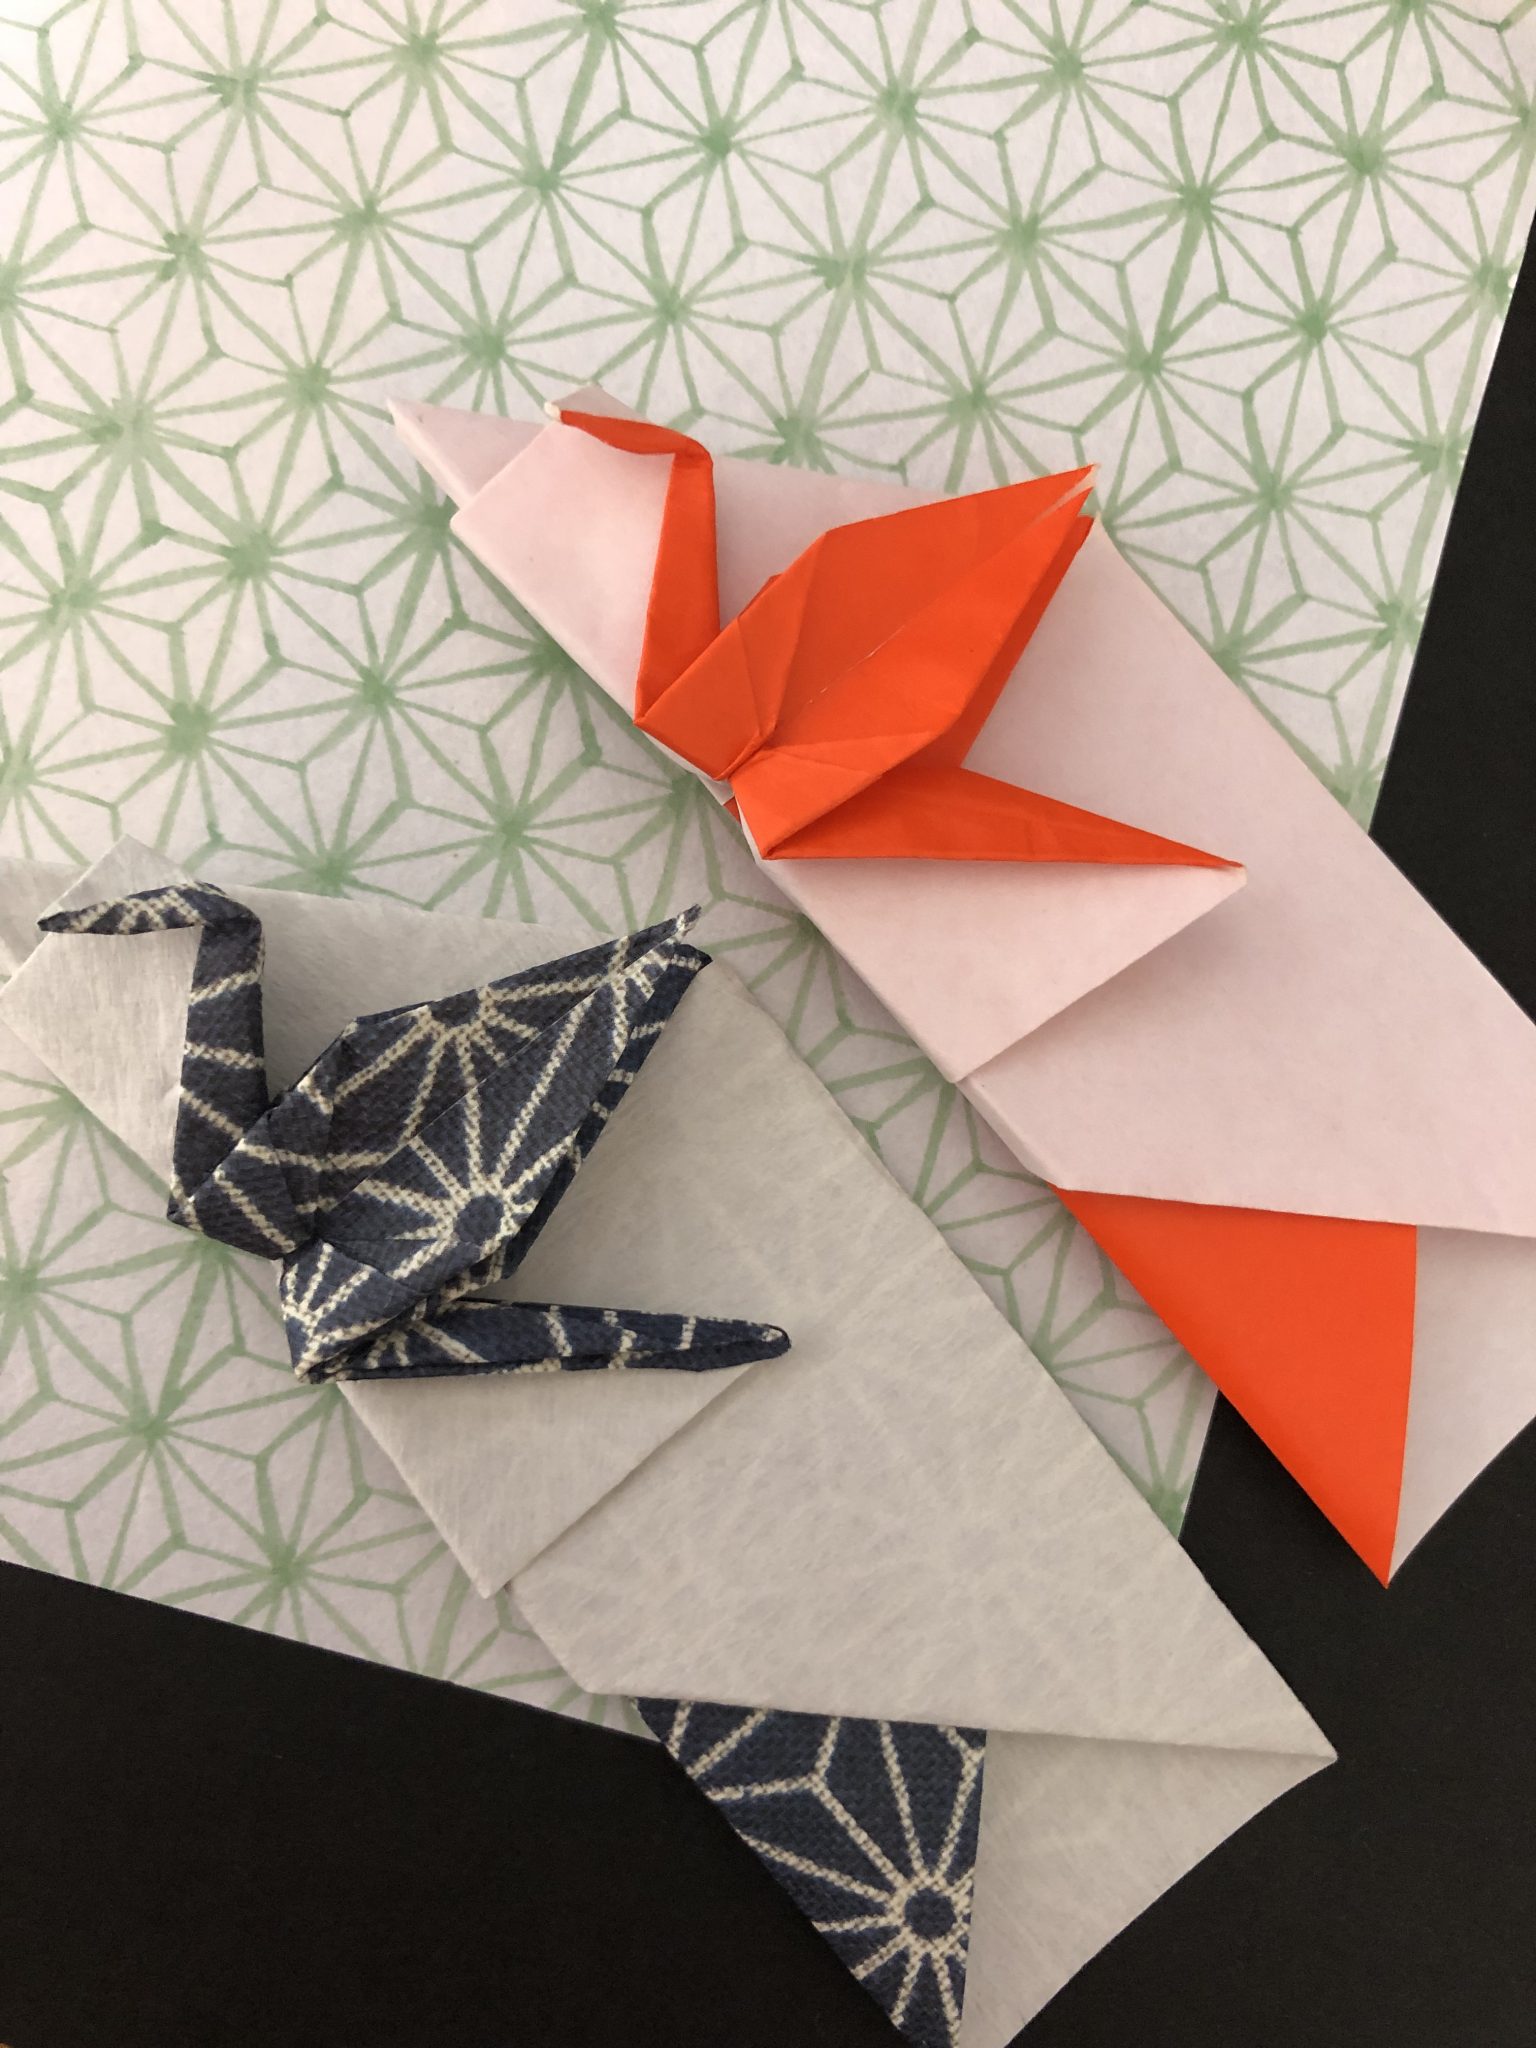 材料は折り紙だけ！オシャレな鶴の「祝い箸袋」を作って新年を迎えよう♪ | bestive